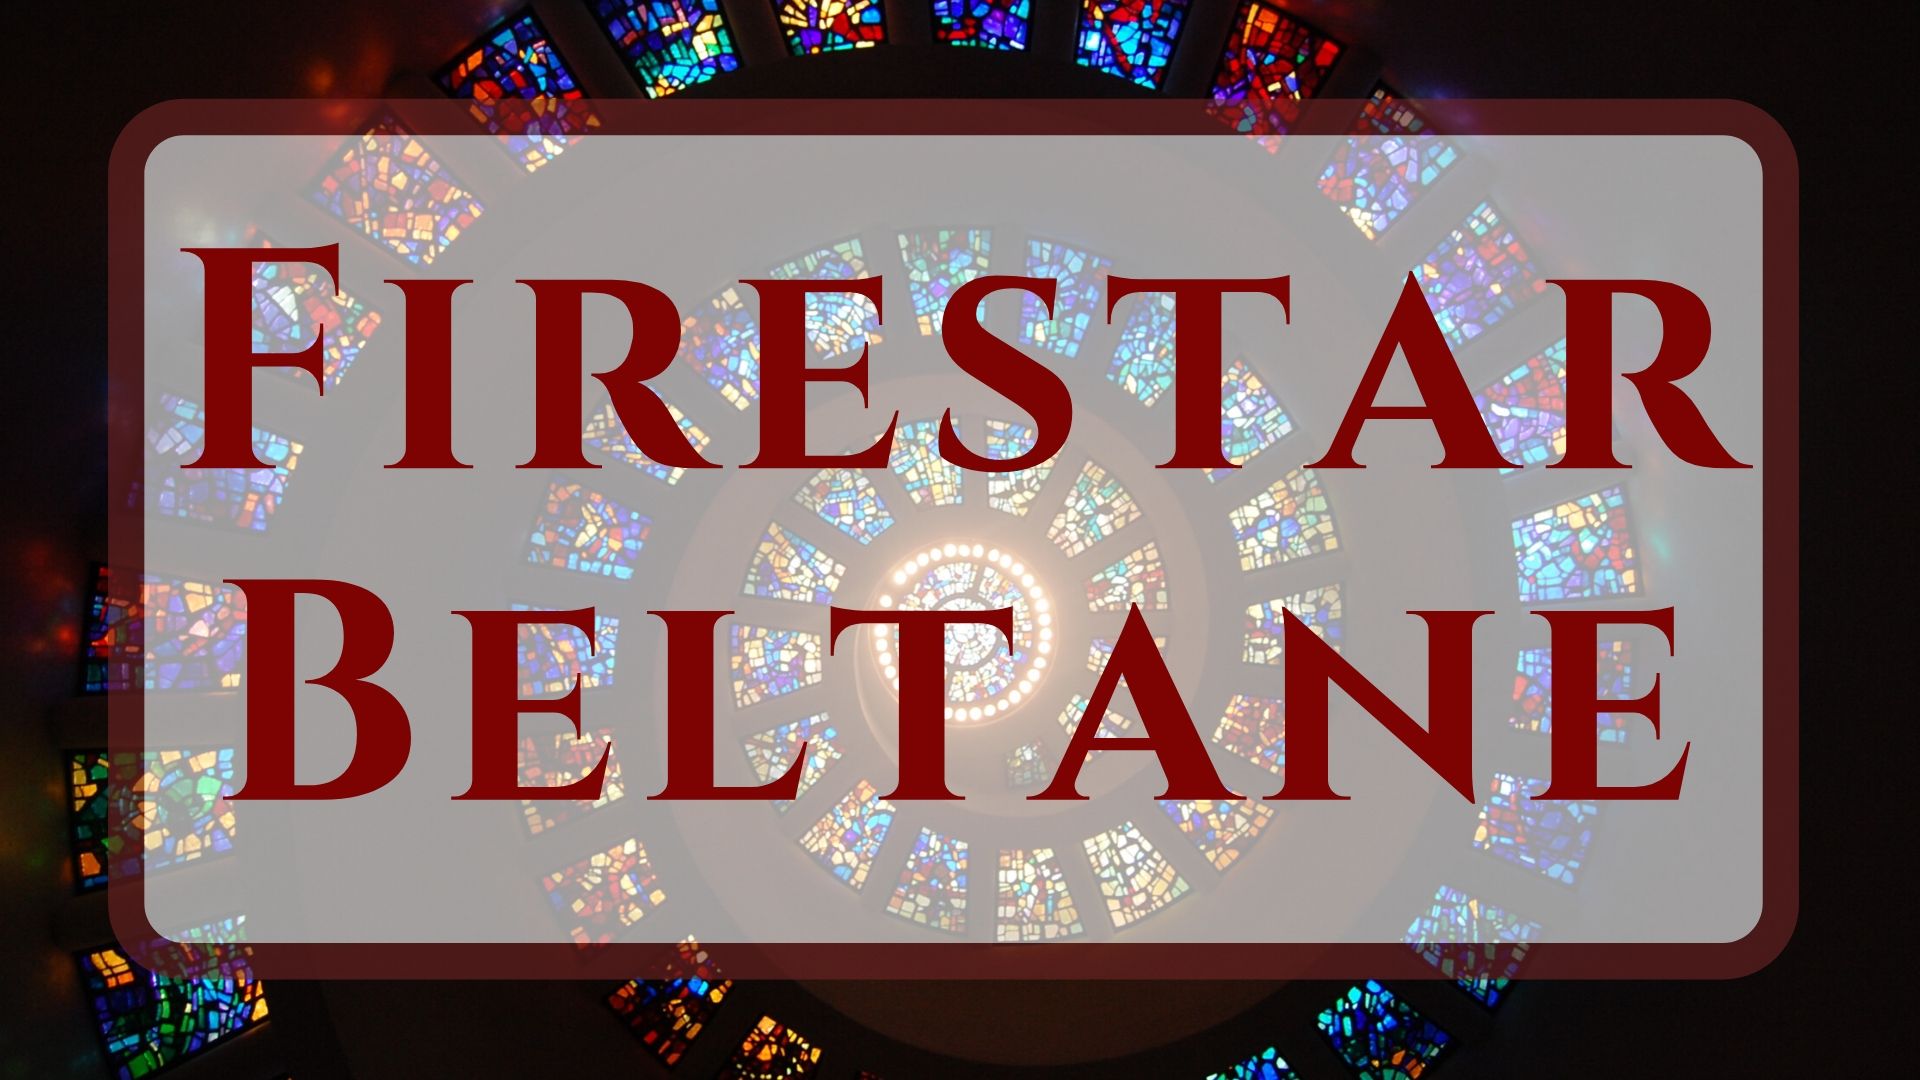 Firestar Beltane – Beltaine Festival